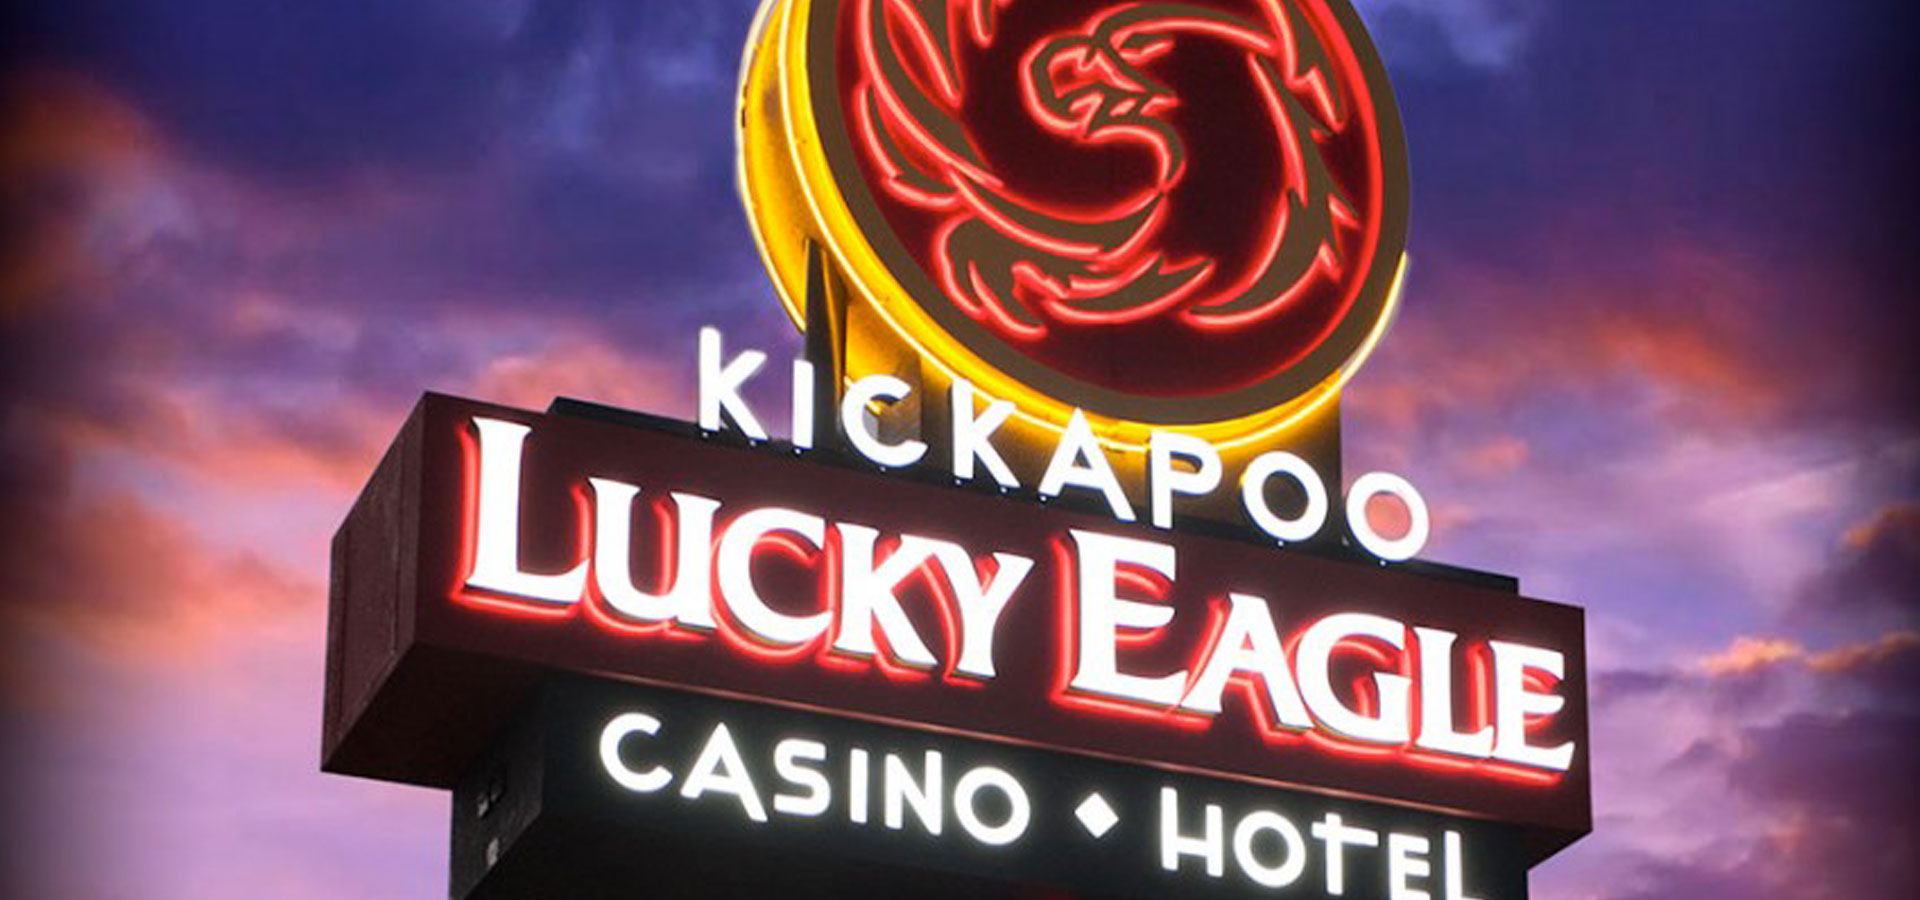 lucky eagle casino hotel eagle pass tx